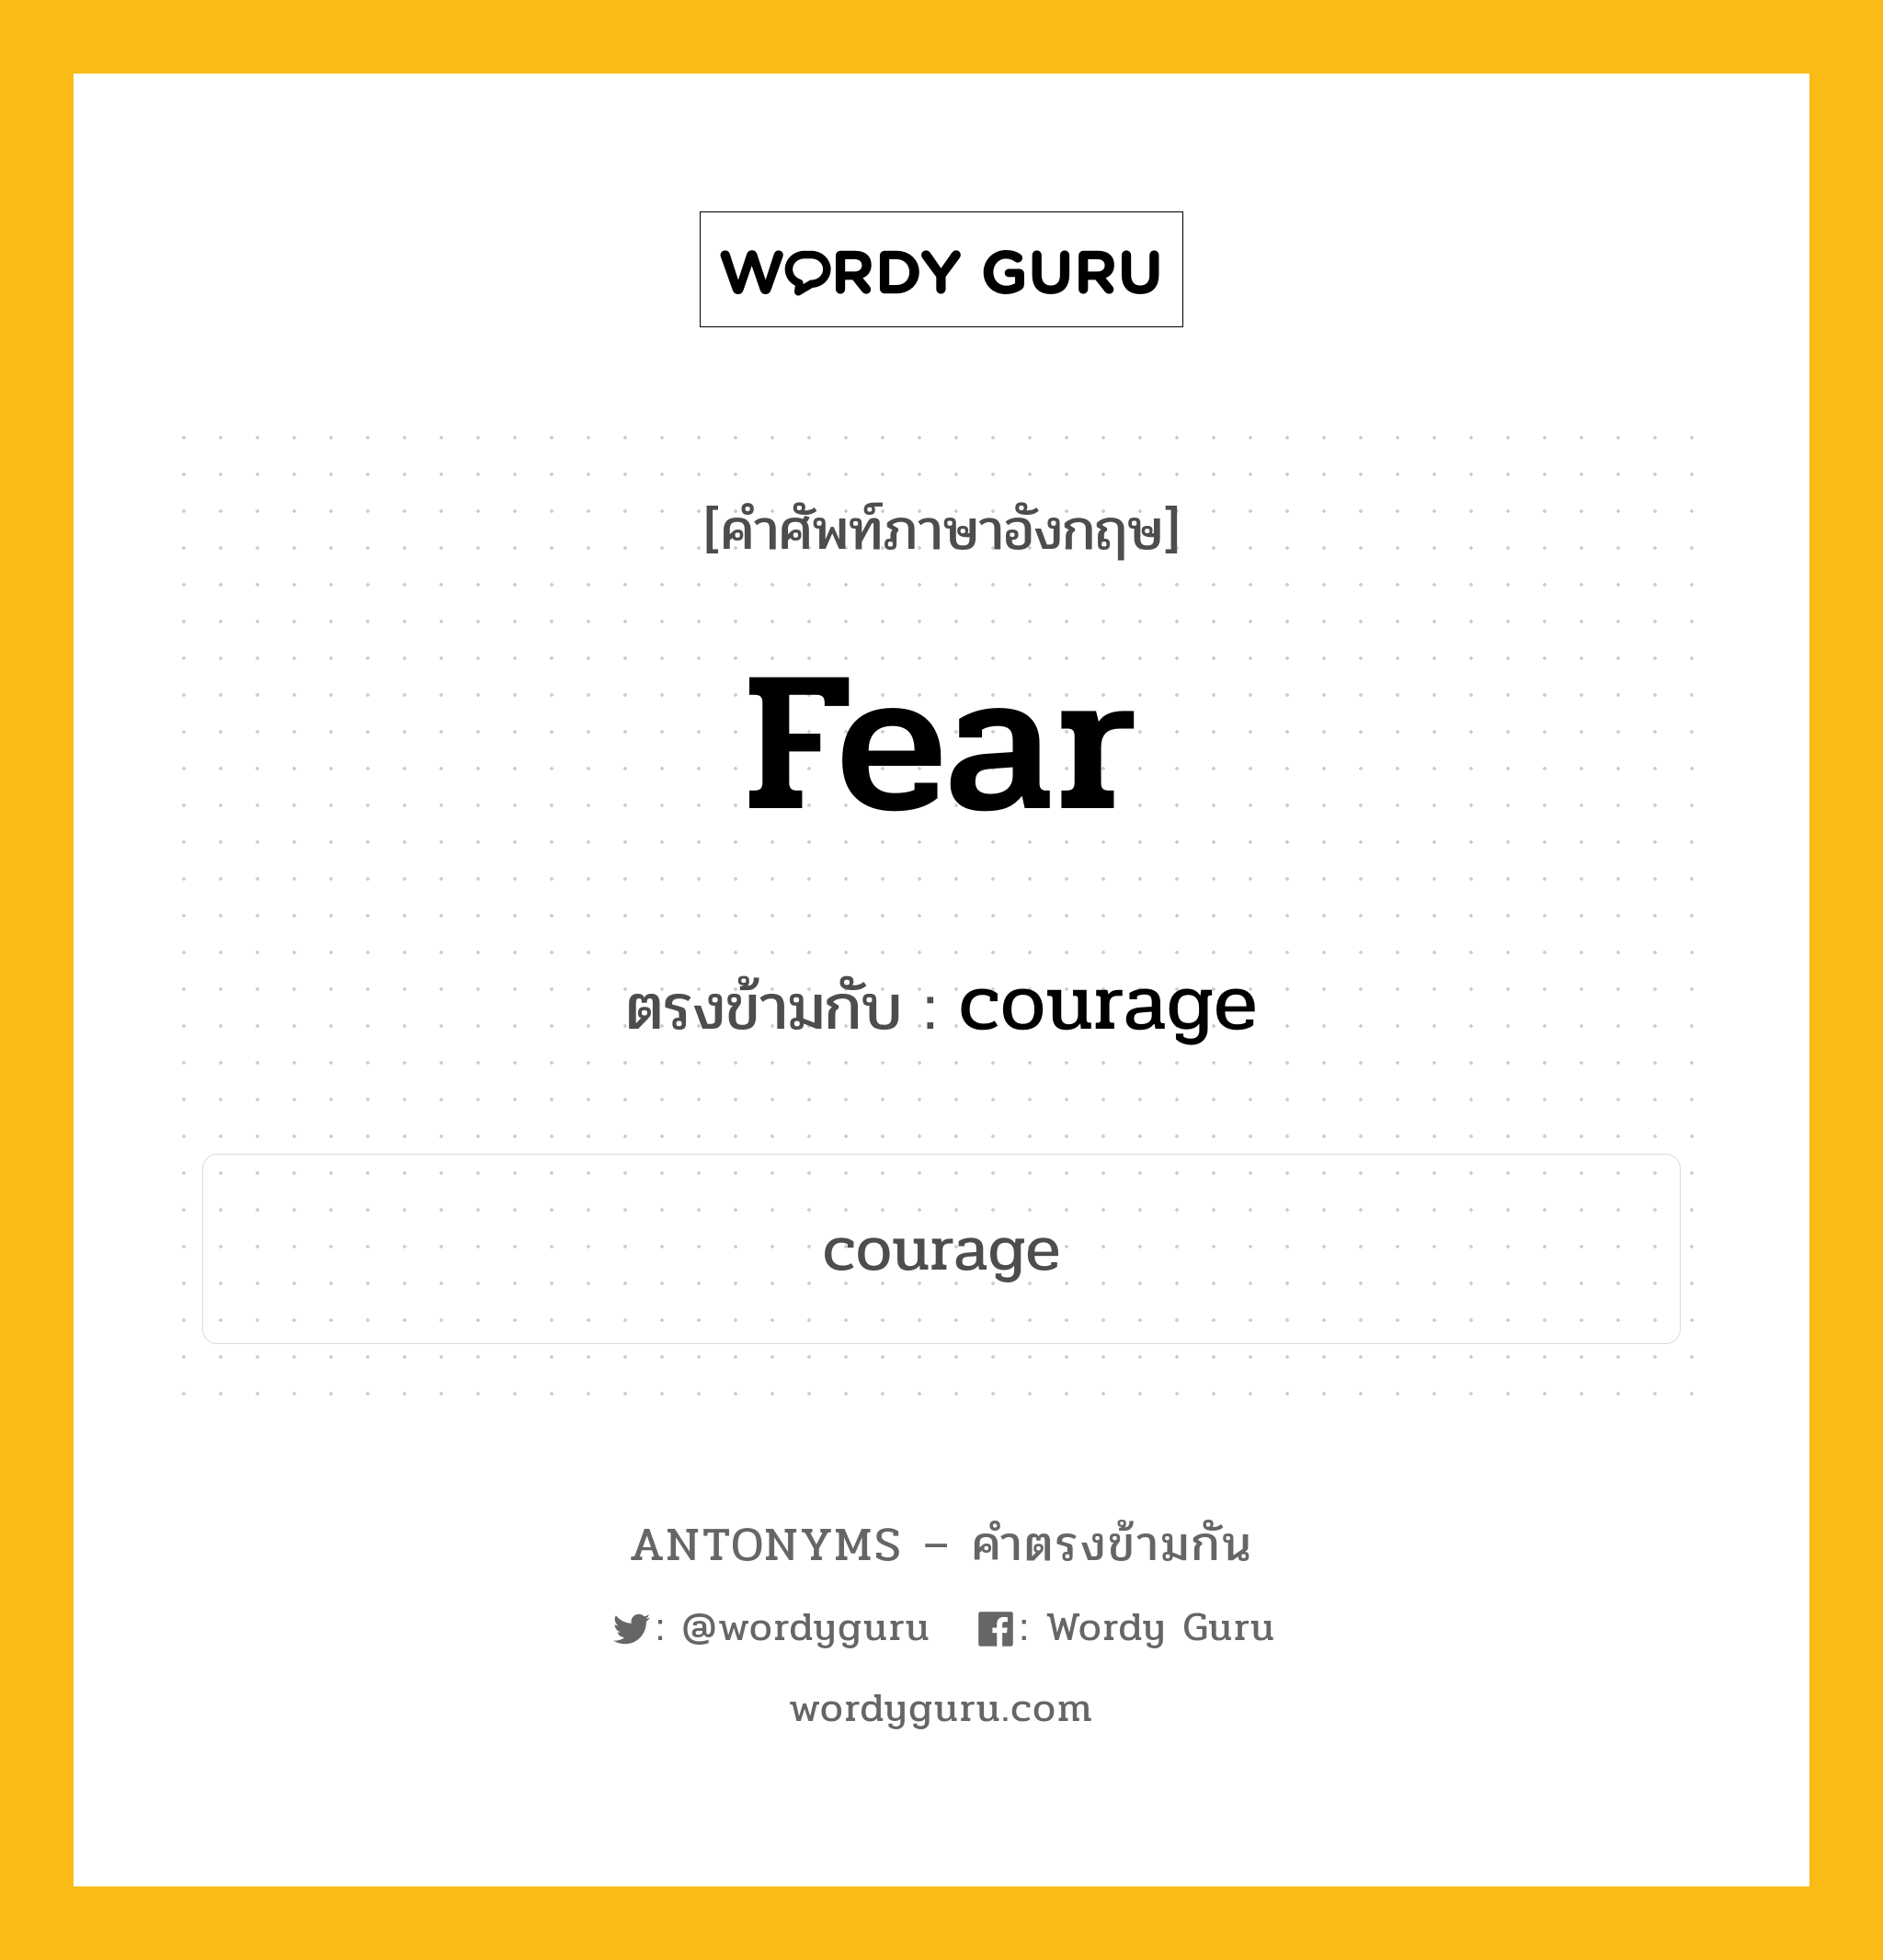 fear เป็นคำตรงข้ามกับคำไหนบ้าง?, คำศัพท์ภาษาอังกฤษ fear ตรงข้ามกับ courage หมวด courage